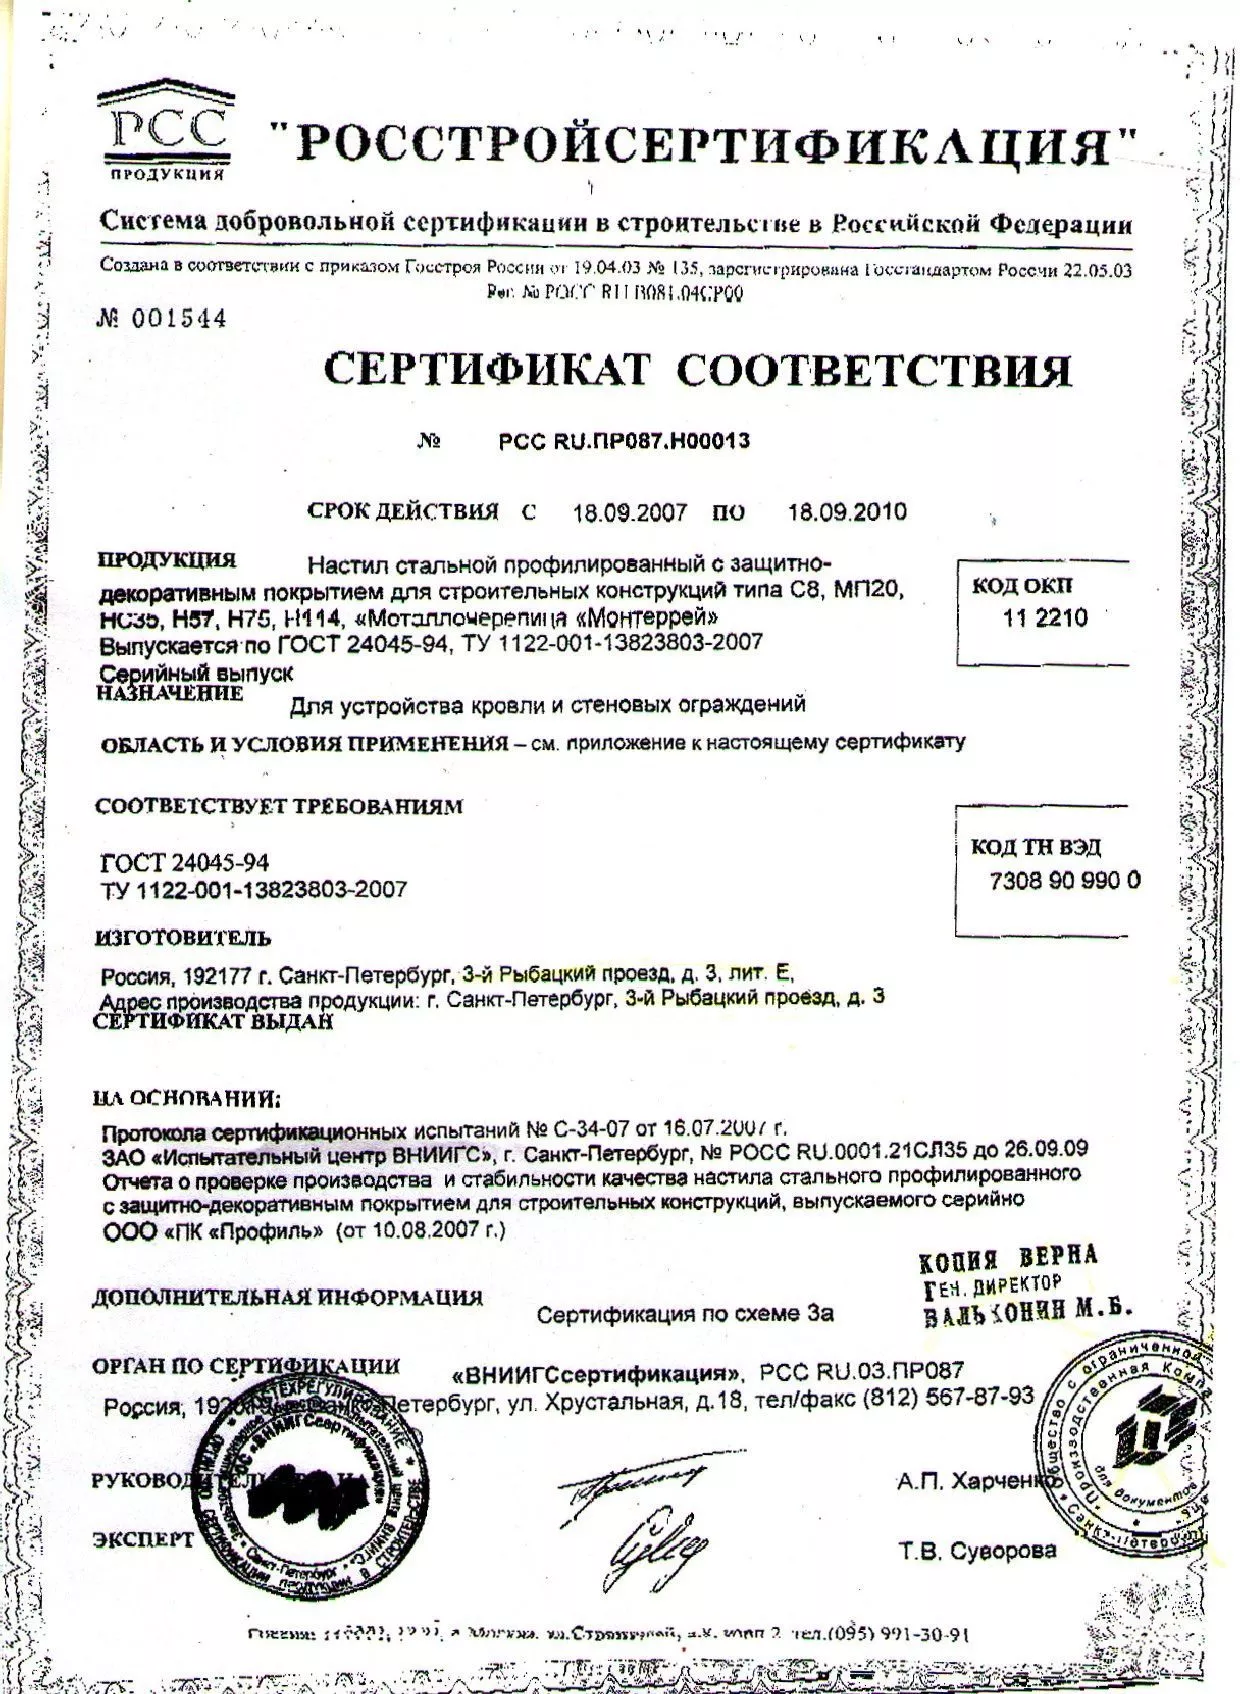 Сертификат на стальной профлист с8, с18, мп20, нс35, н57, н 75, н114 до 09-10 (1)